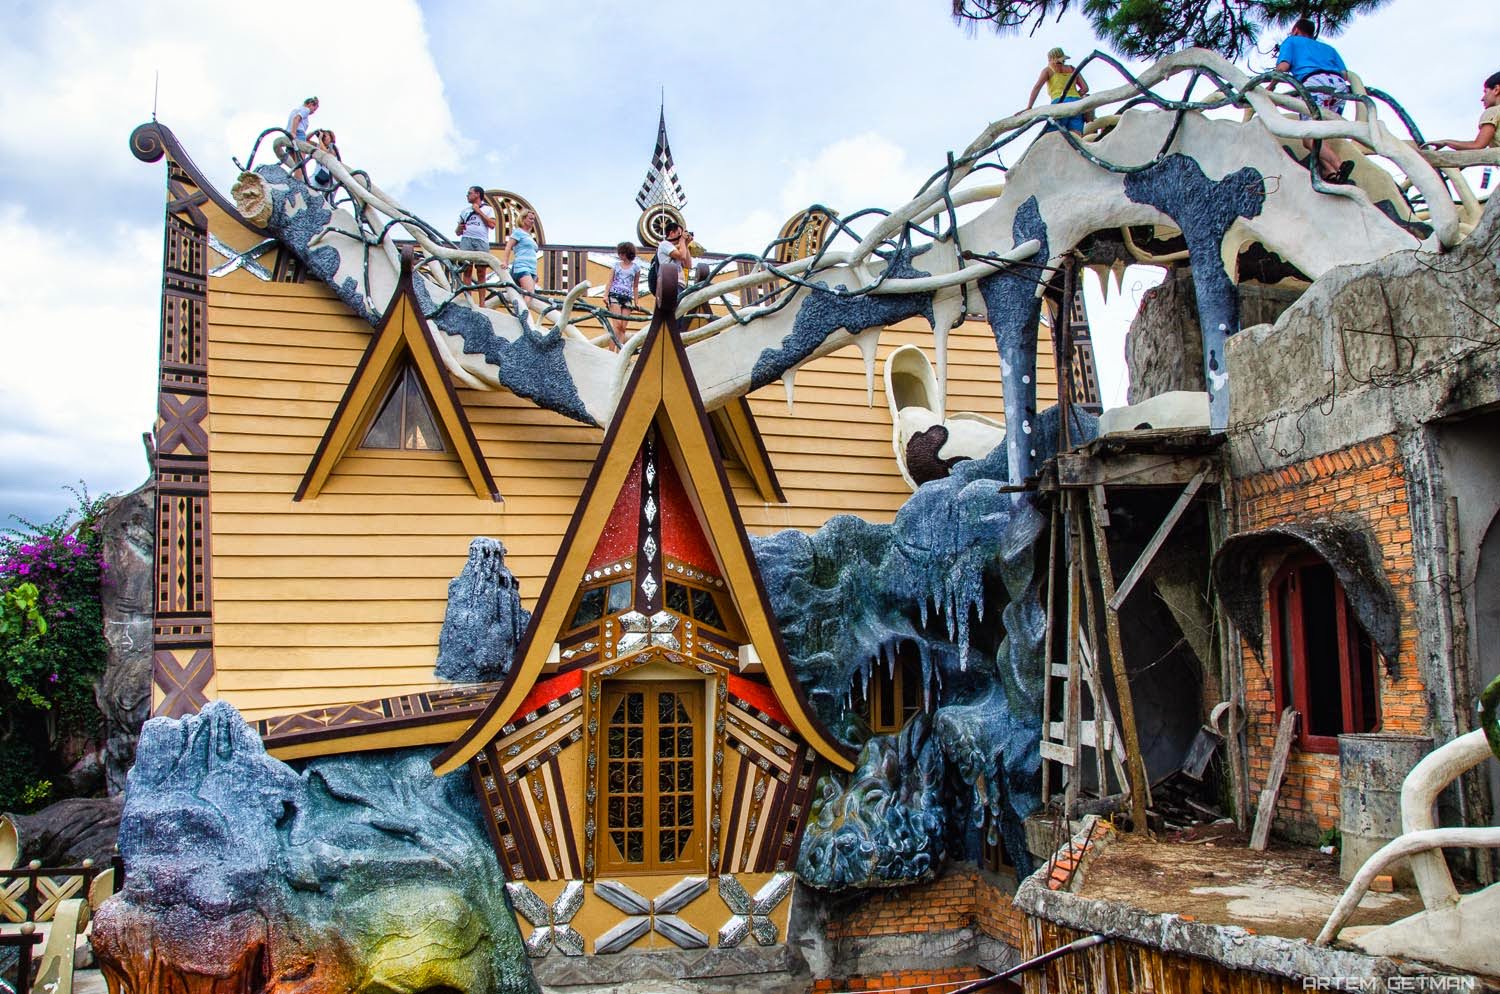 Crazy house - Ngôi nhà Điên dị nhất Thế giới - Địa điểm du lịch cực HOT tại Đà Lạt